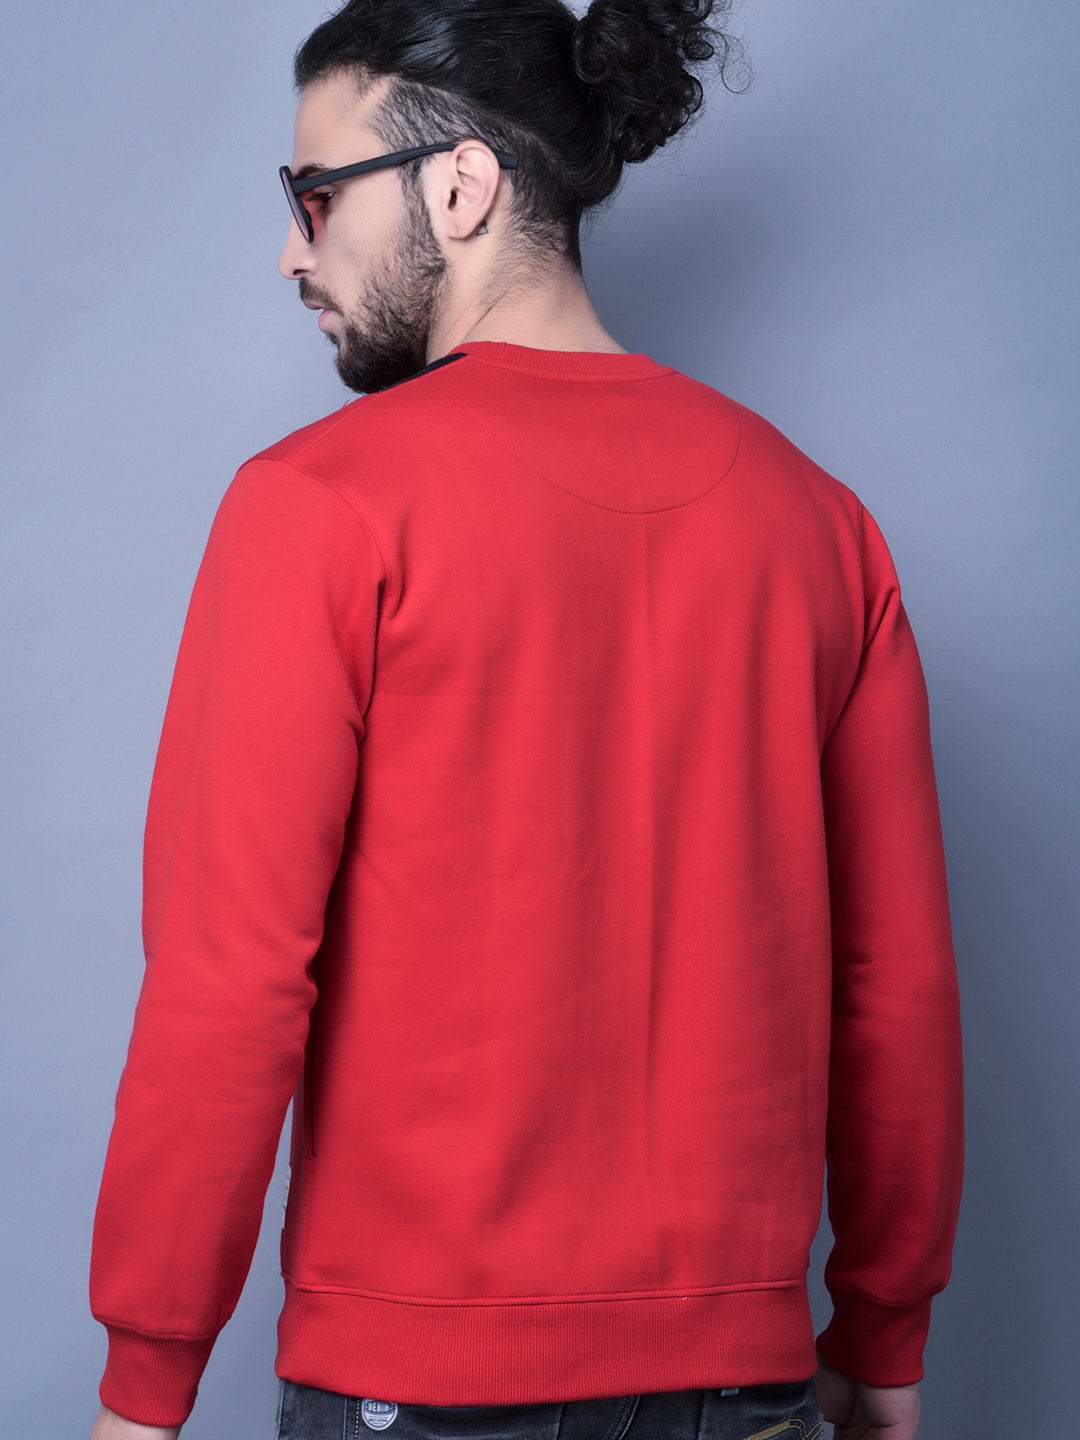 Cobb Red Solid Round Neck Sweatshirt